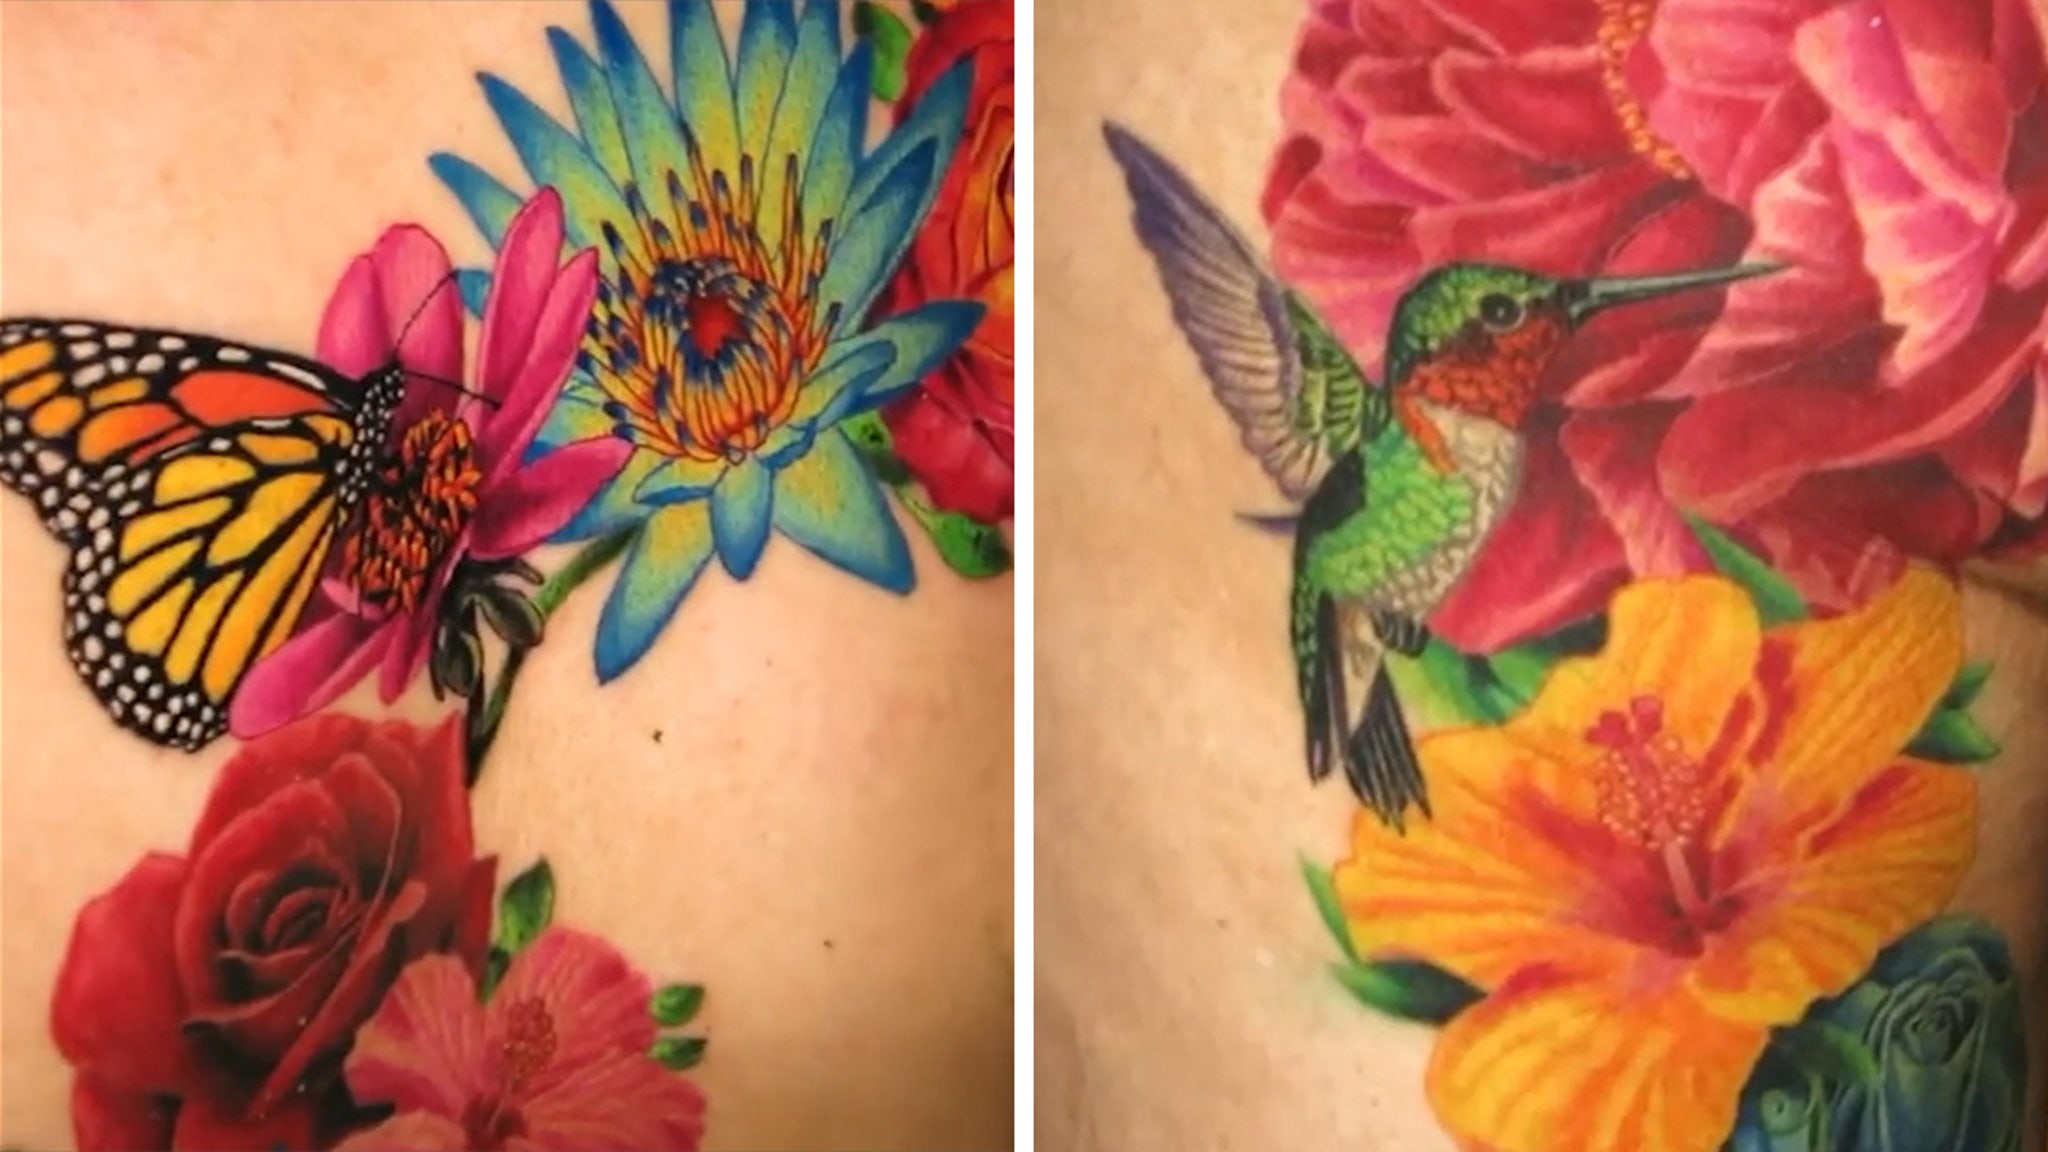 Cardi B Reveals Massive New Back Tattoo